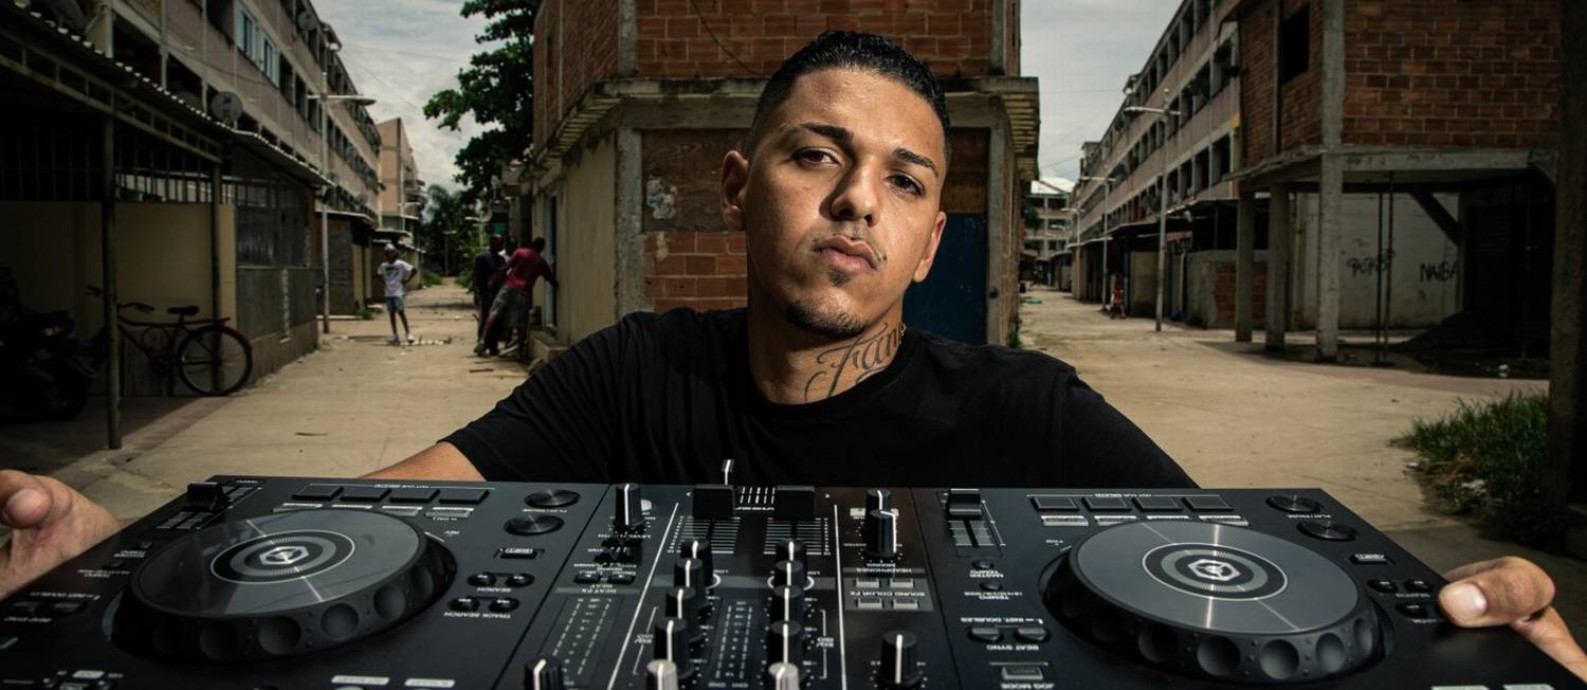 O produtor musical e DJ Chris Beats ZN, de 23 anos, com seu equipamento de trabalho, na favela onde mora: "Tomara que a situação melhore, porque minha região não tem nada" Foto: Hermes de Paula / Agência O Globo